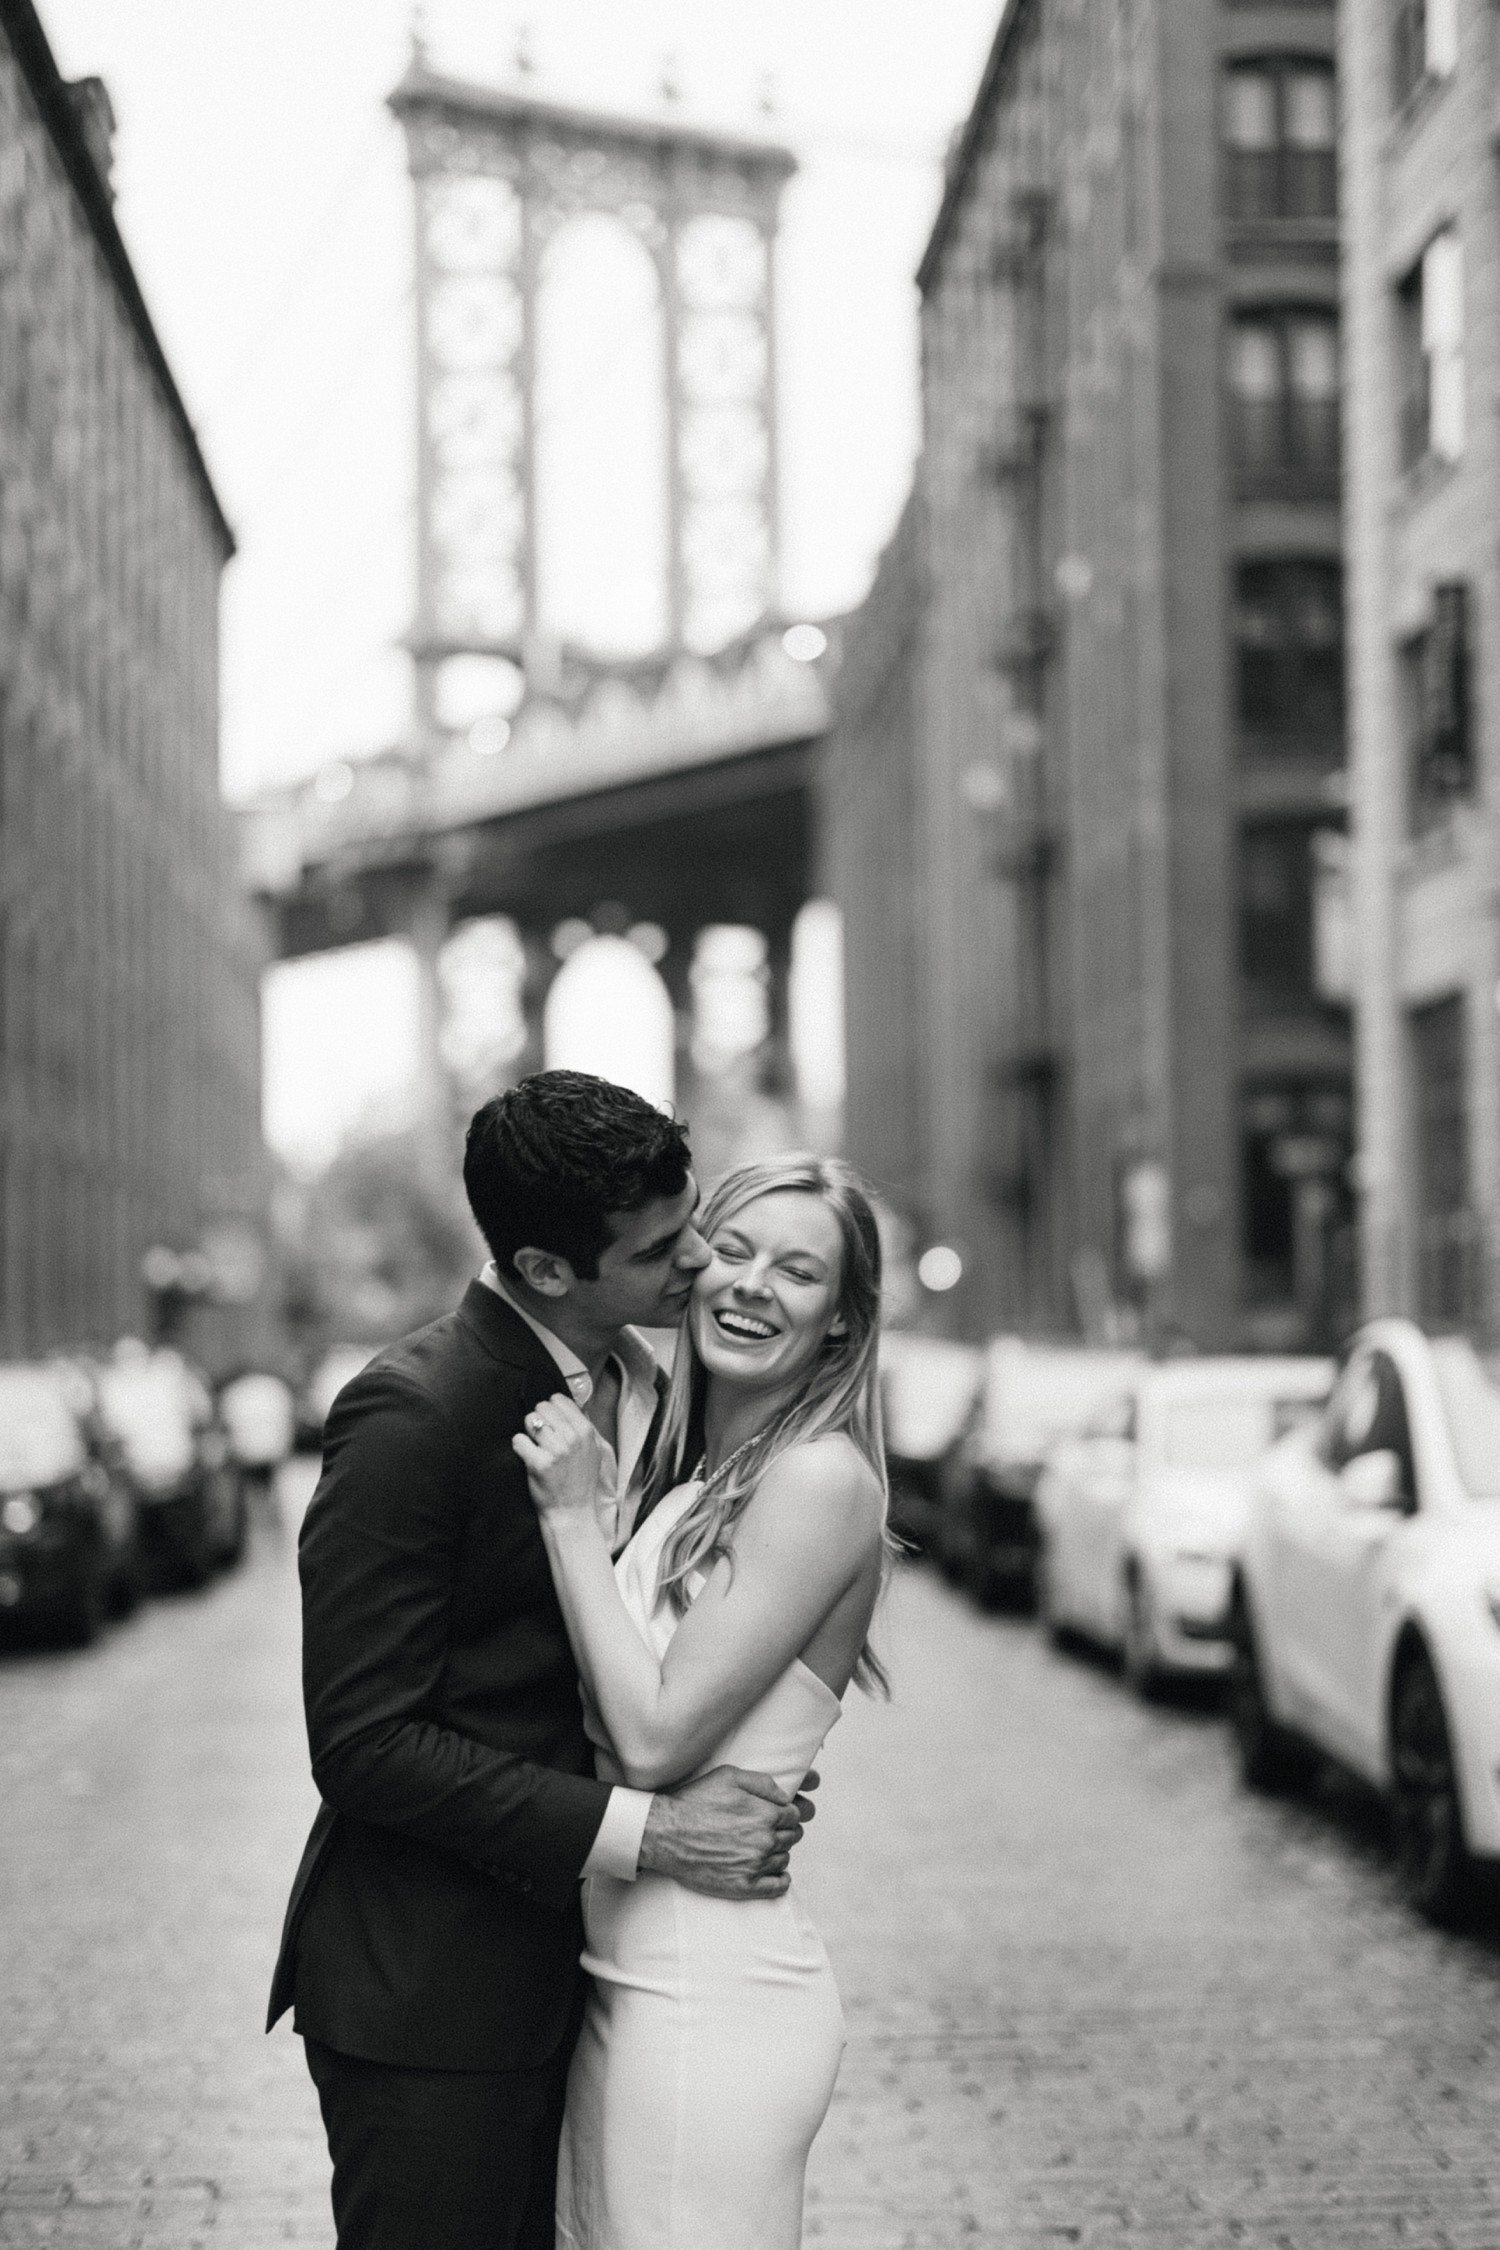 NYC engagement photos at Brooklyn Bridge.